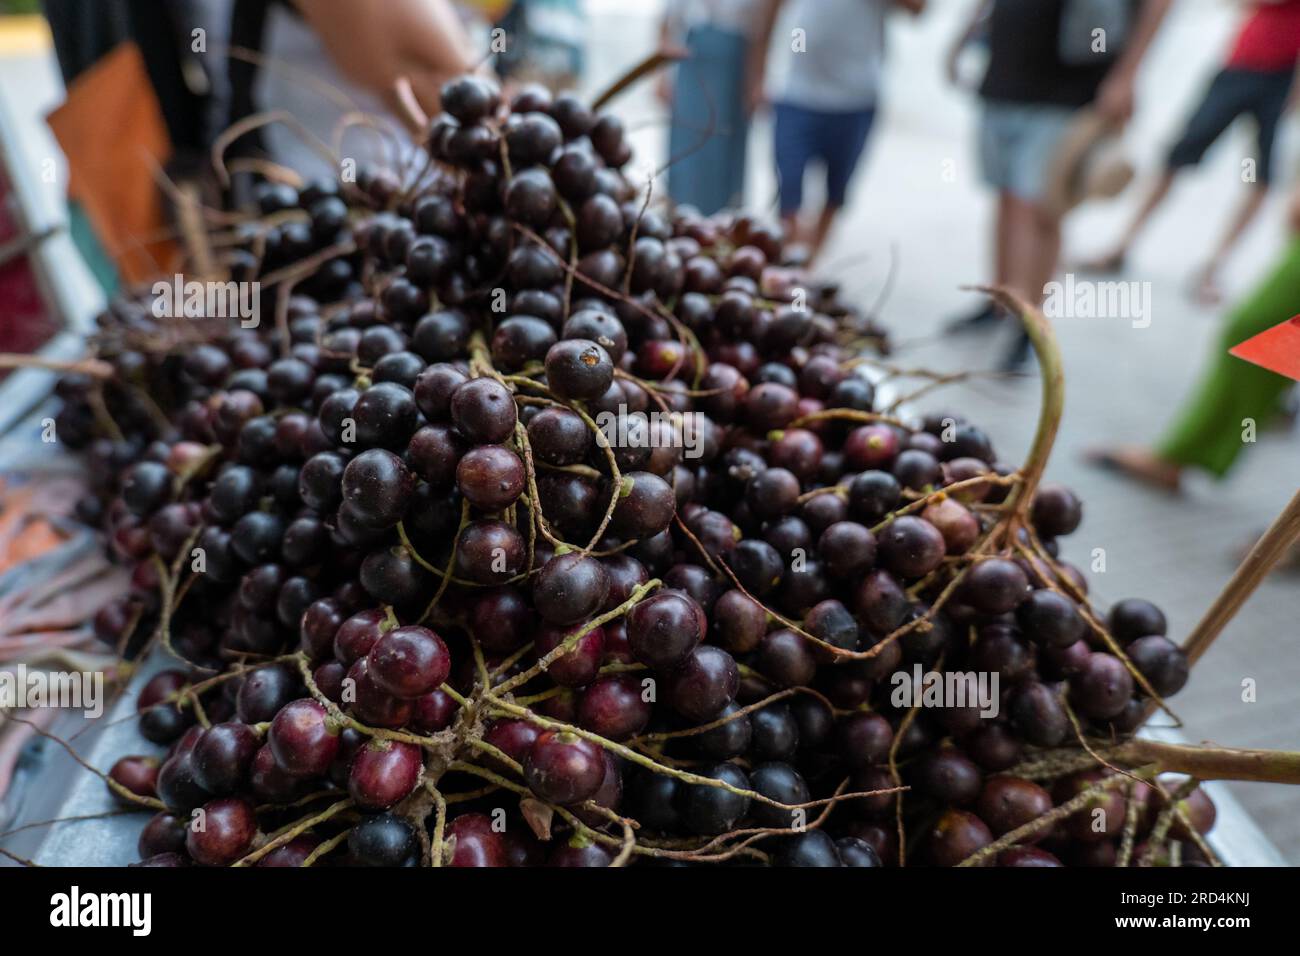 Nahaufnahme einer großen Menge Corozo-Früchte (Bactris guineensis), Eine dunkelrote Palmenfrucht, die als erfrischende Säfte verwendet wird Stockfoto